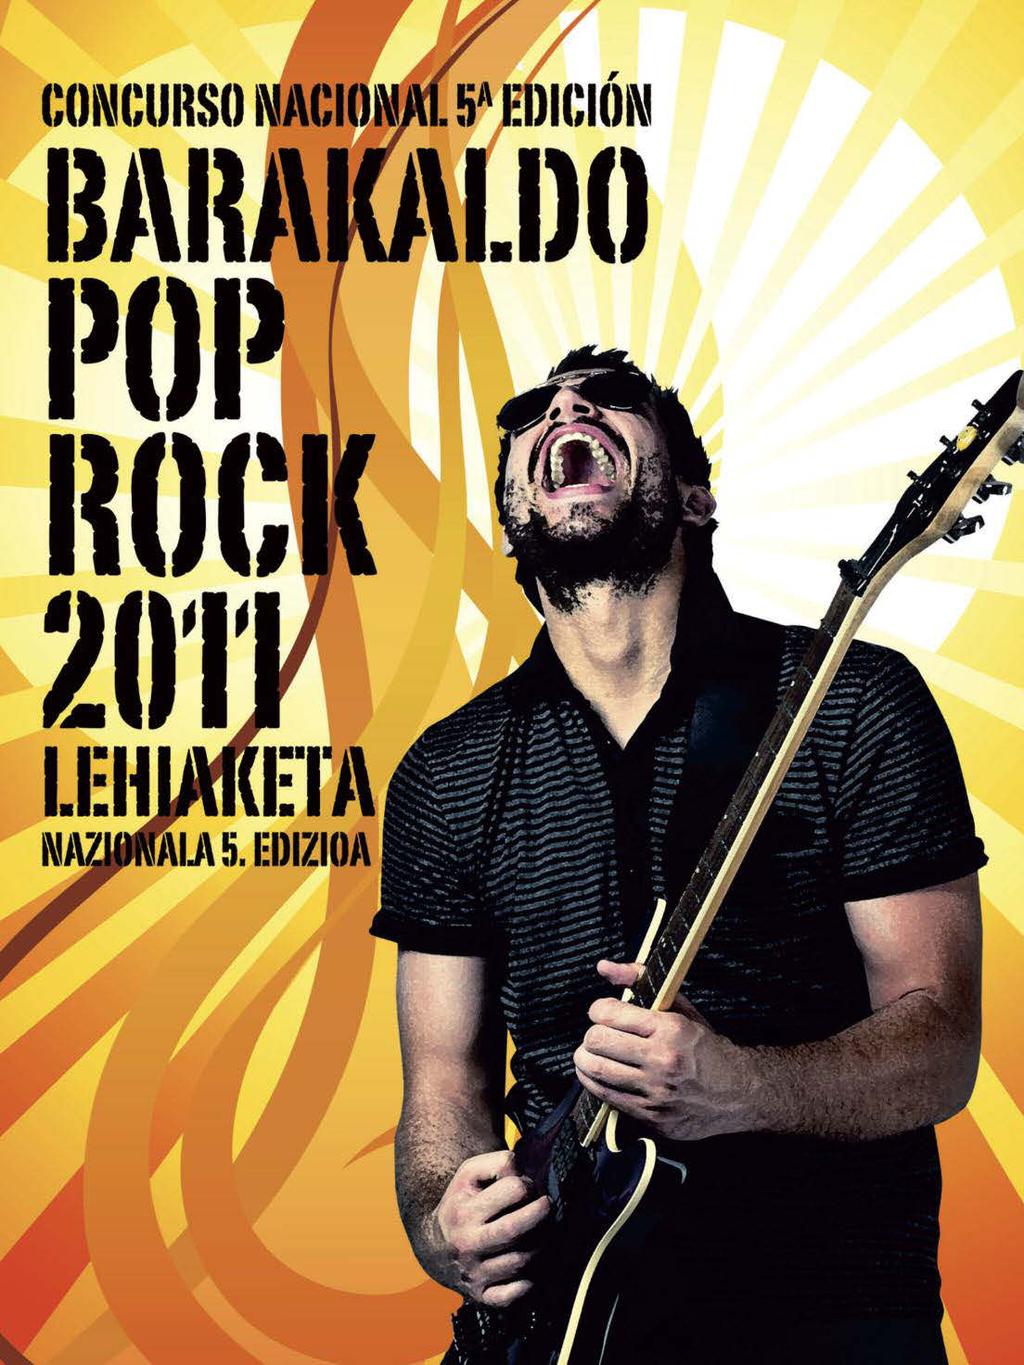 12 Barakaldo - JUVENTUD - iraila-2011 Ya está aquí la quinta edición del Concurso Nacional de Pop-Rock Las bandas musicales jóvenes pueden inscribirse al certamen hasta el 15 de octubre Barakaldo